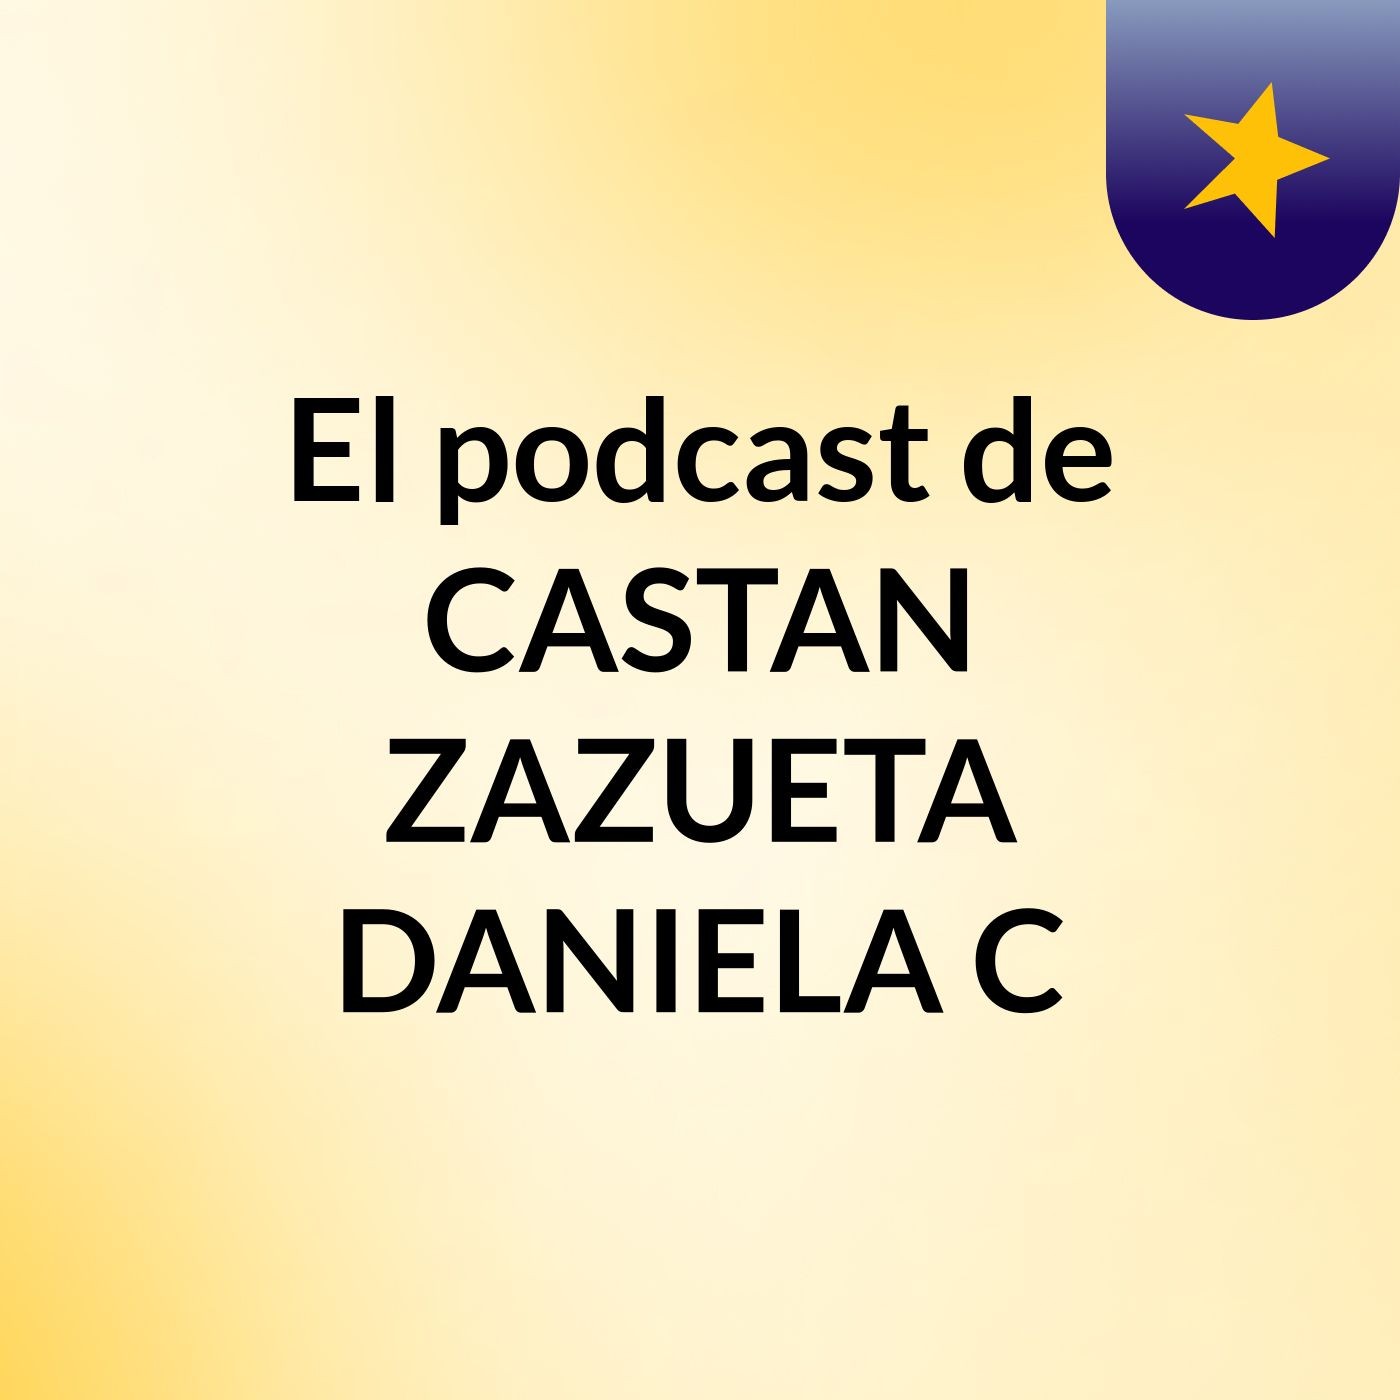 El podcast de CASTAN ZAZUETA DANIELA C